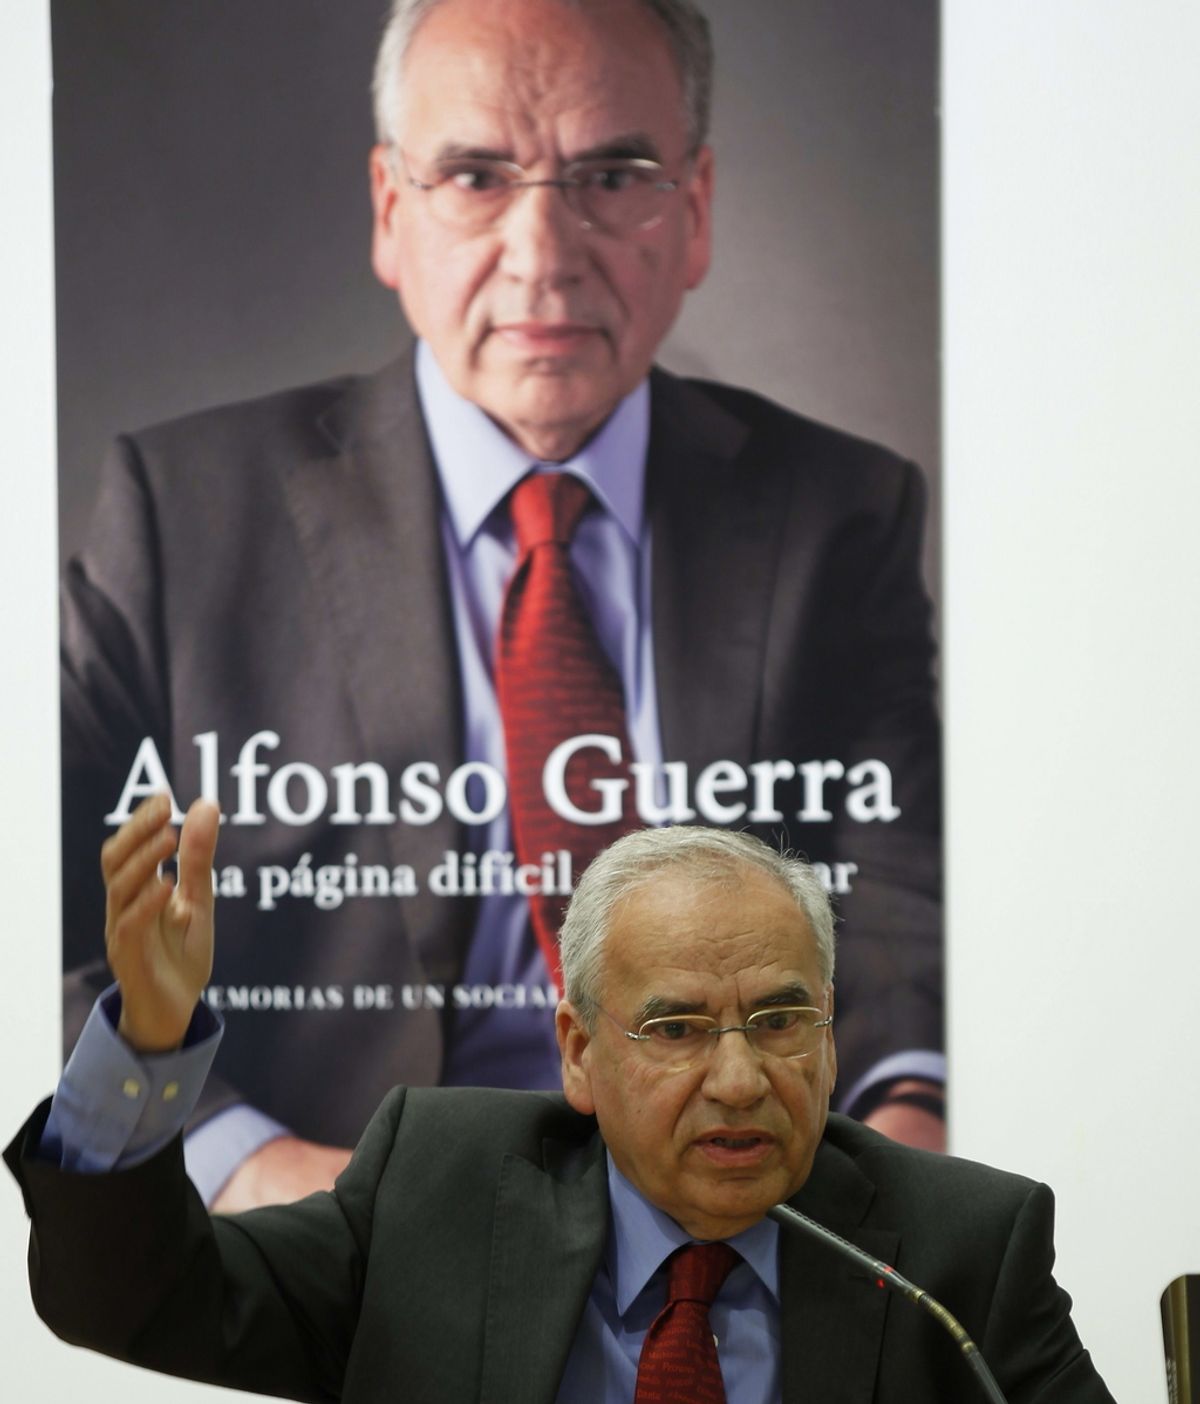 Alfonso Guerra: "La gente va a reaccionar y no de forma tan pacífica como quisiéramos"